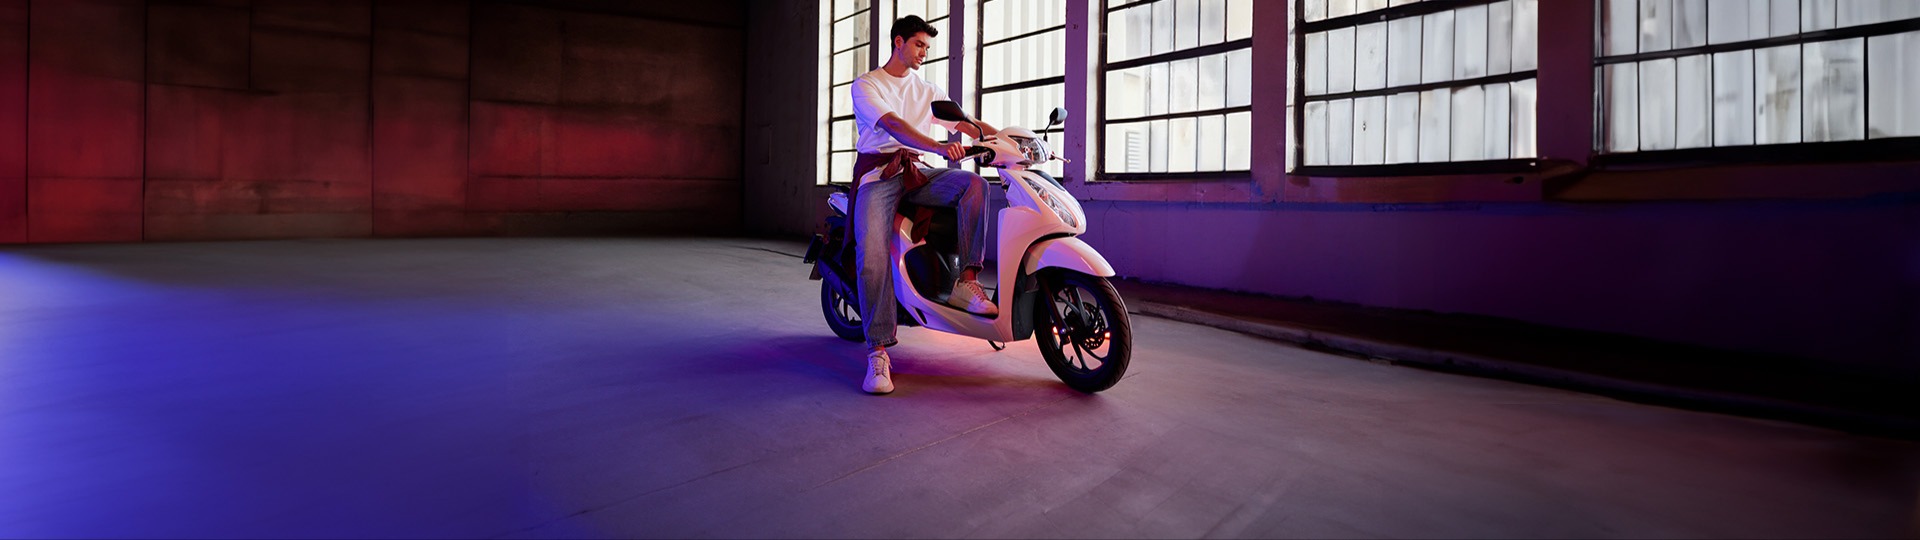  DRD Motorbikes 40.000 TL’ye vade farksız 12 ay taksitle sizin de ilk motosikletiniz Honda Dio olsun.